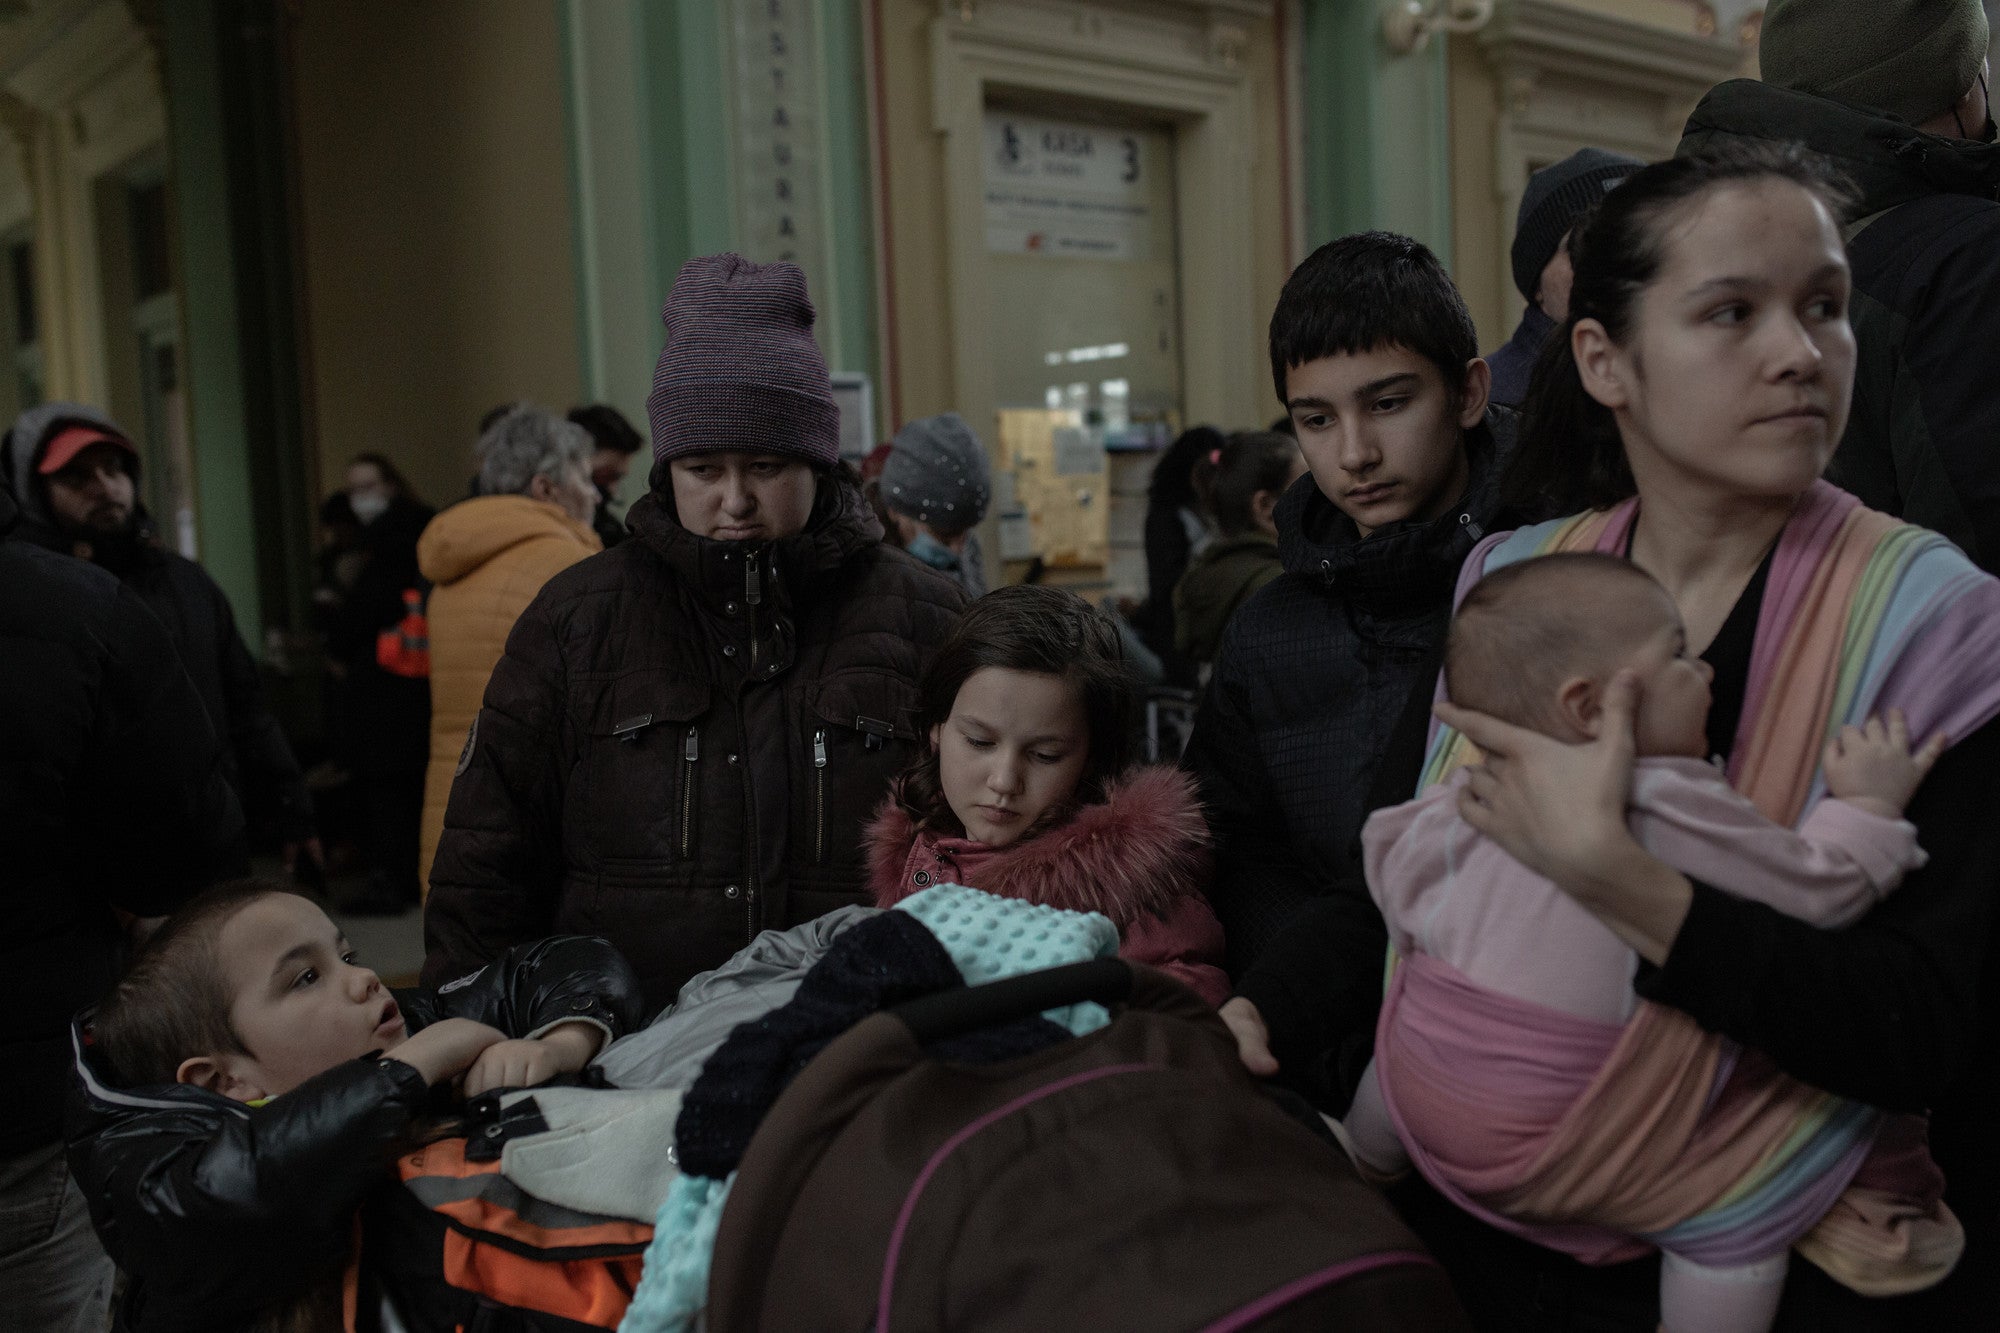 Des réfugiés ukrainiens, dont de nombreux enfants et femmes, arrivent par trains à la gare de Przemyl (Pologne).